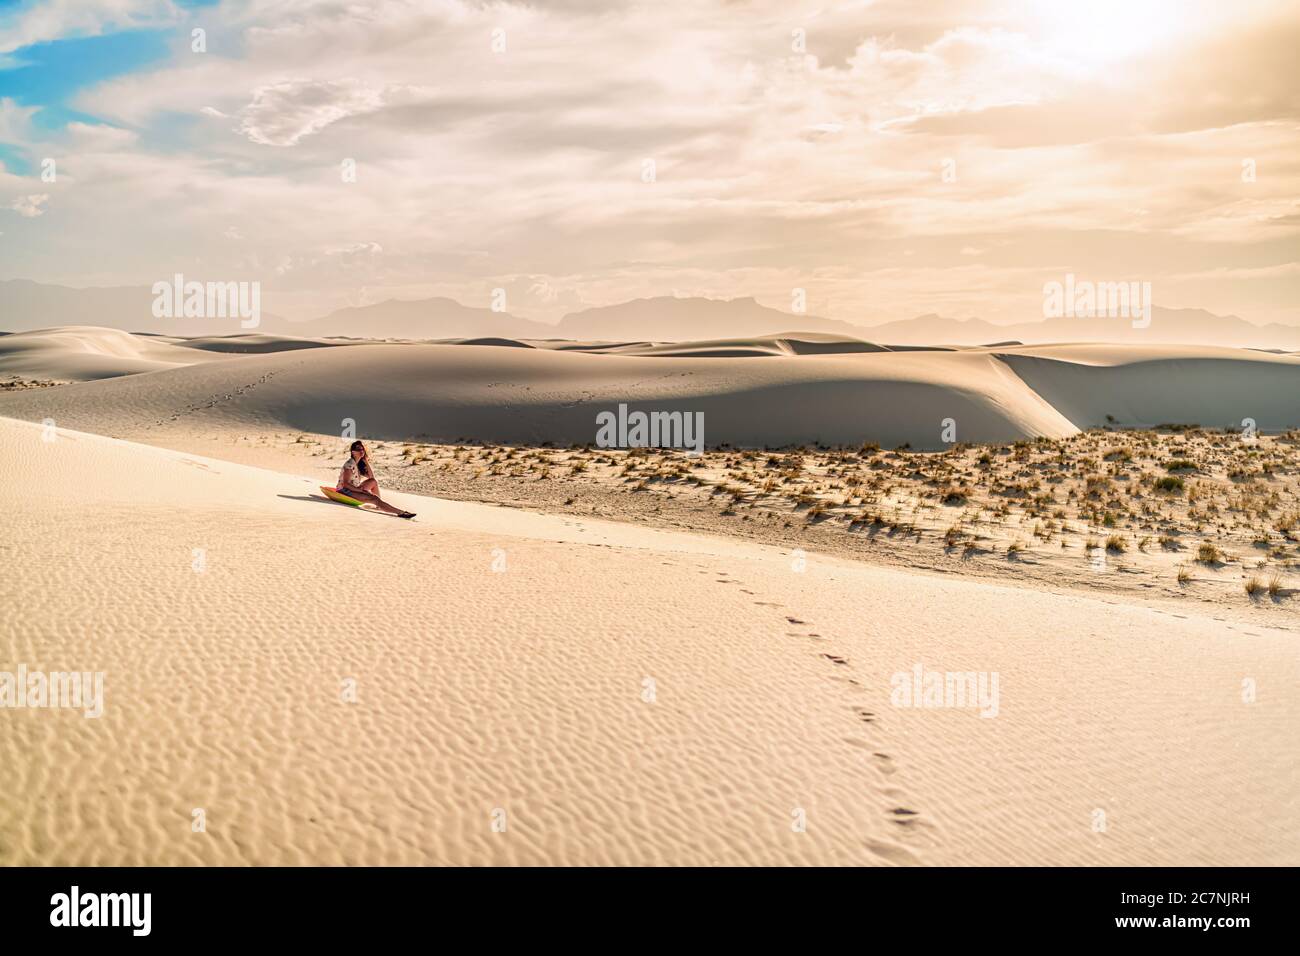 Jeune fille sur le sable dans les dunes de sable blanc monument national au Nouveau-Mexique assis sur un traîneau à disques pour glisser sur la colline pendant le coucher du soleil de ton vintage Banque D'Images